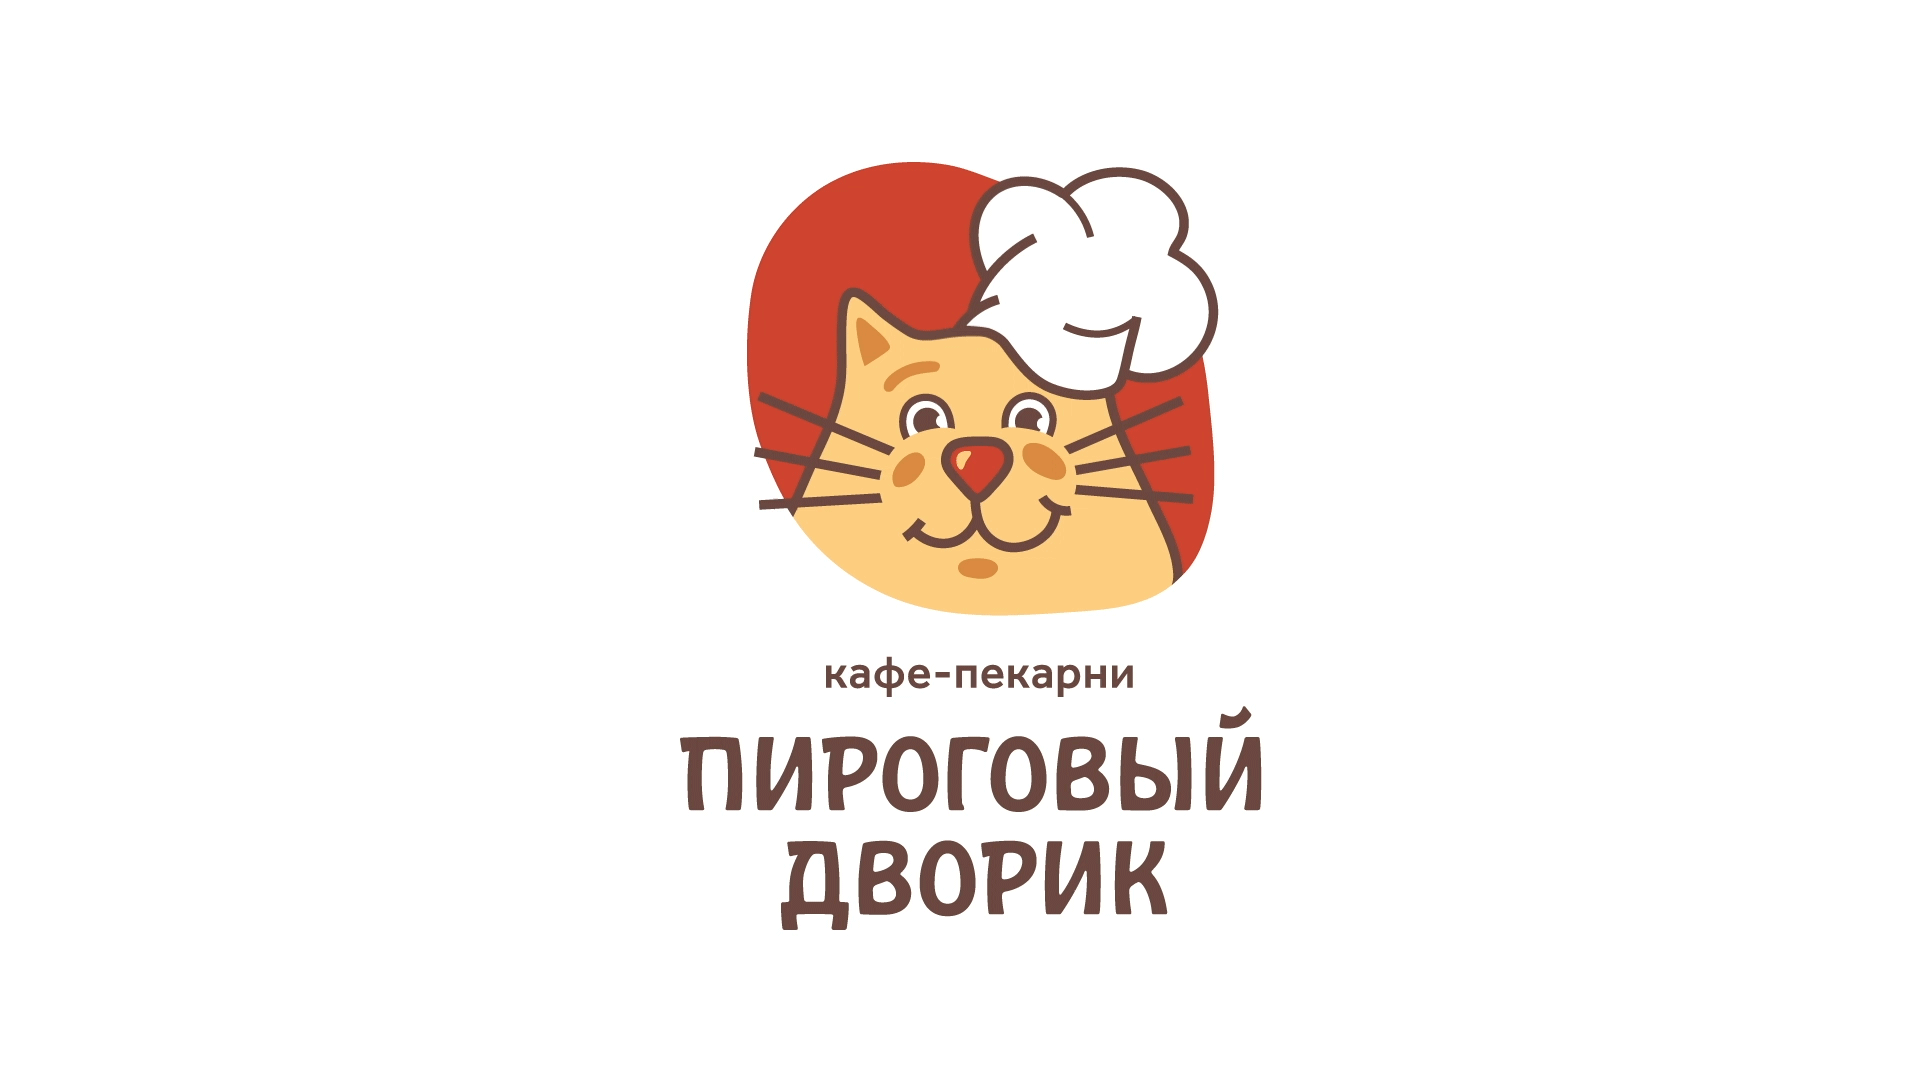 Обновленный логотип бренда "Пироговый дворик"